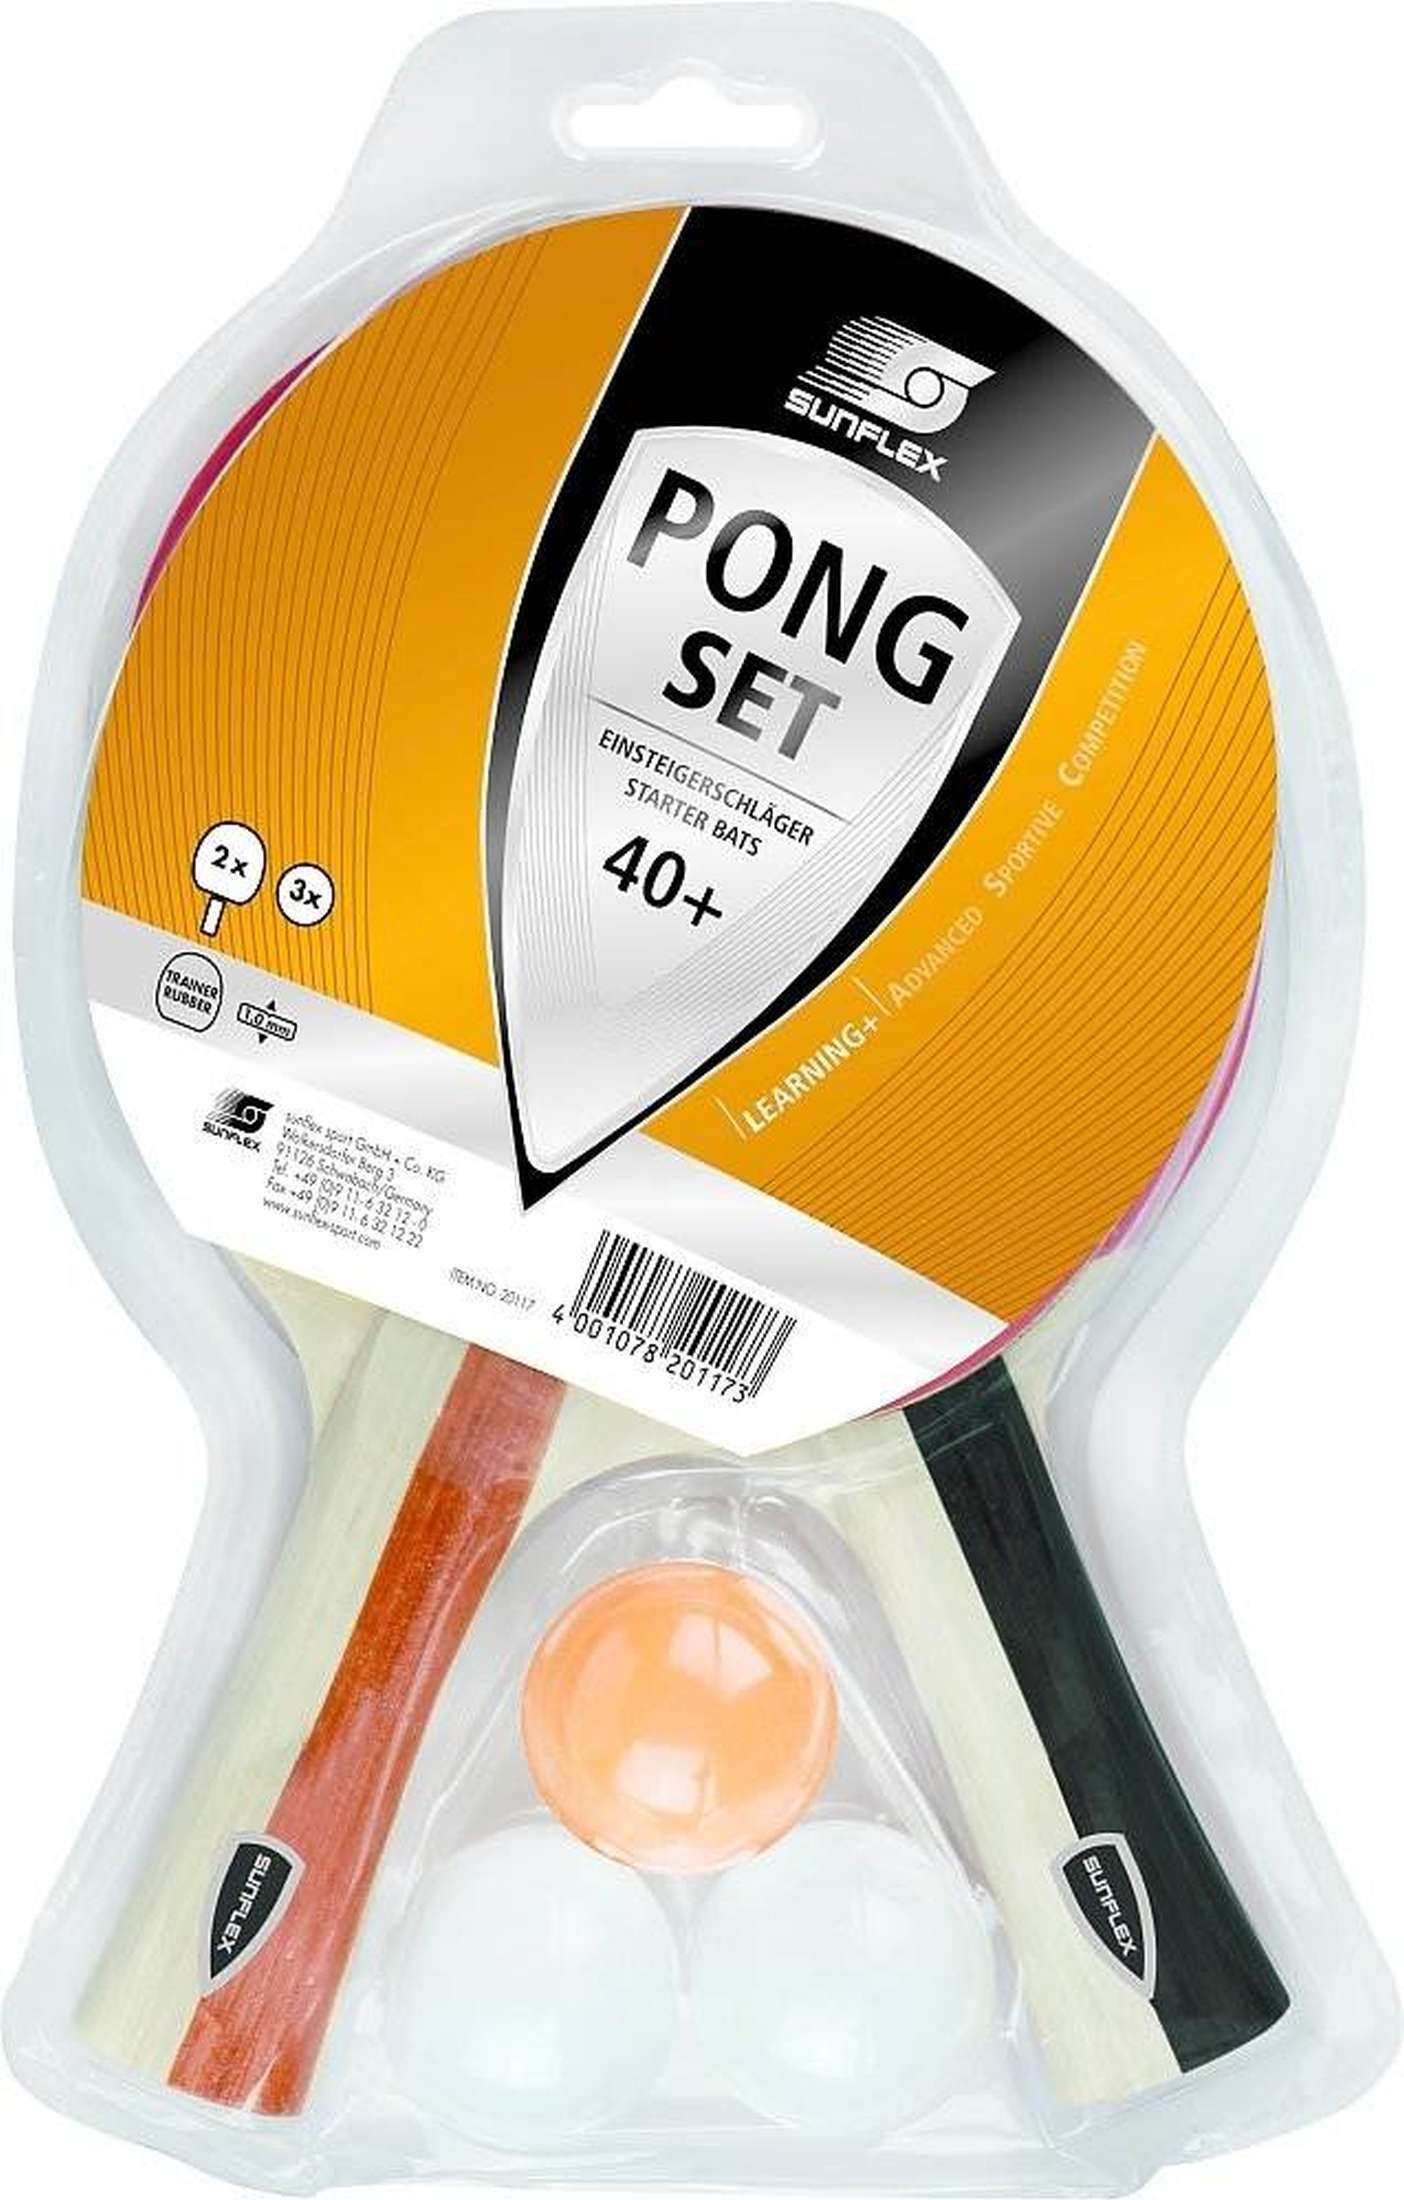 Tischtennis Set Sunflex Pong-1